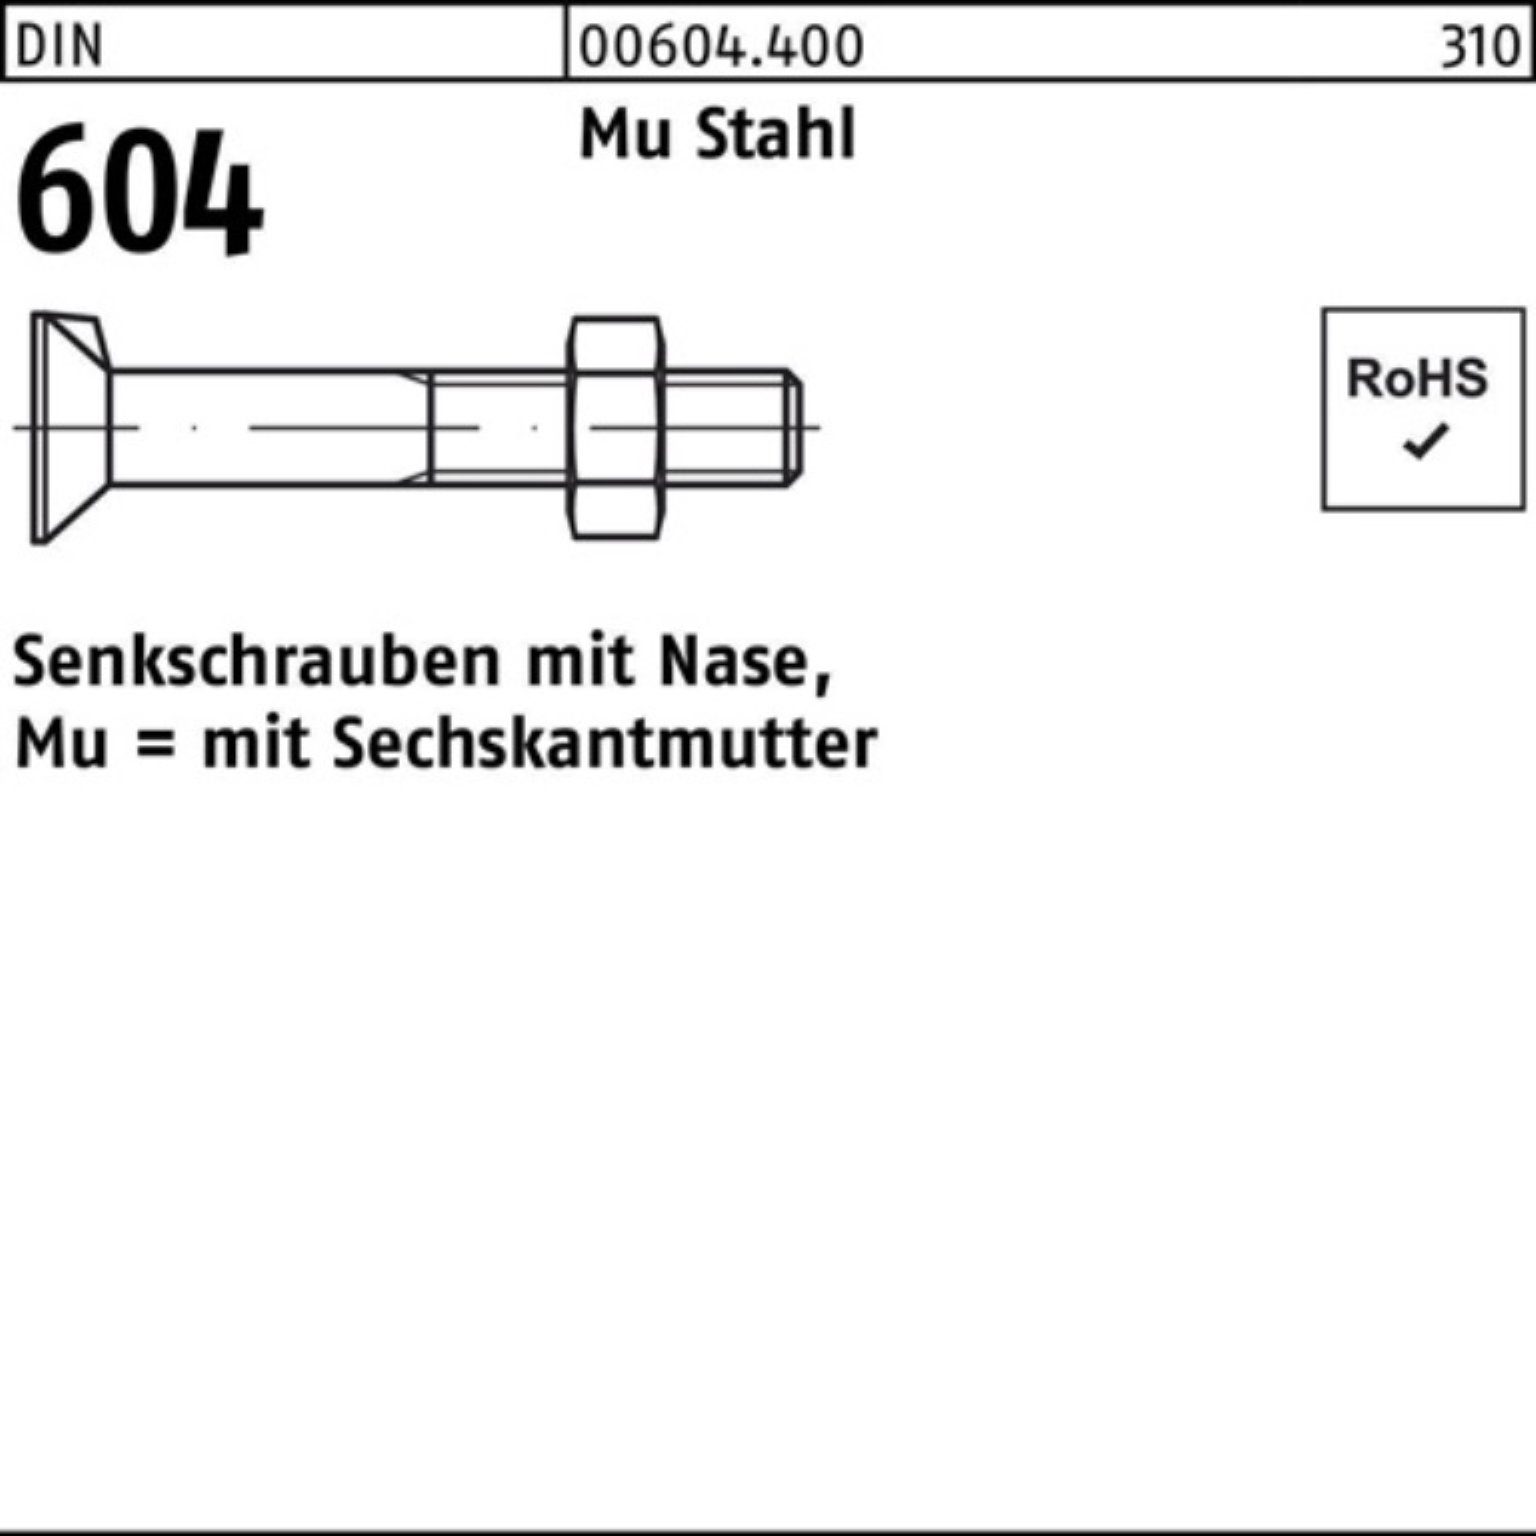 Reyher Senkschraube 200er Pack Senkschraube DIN 604 Nase/6-ktmutter M8x 55 Mu Stahl 4.6 20